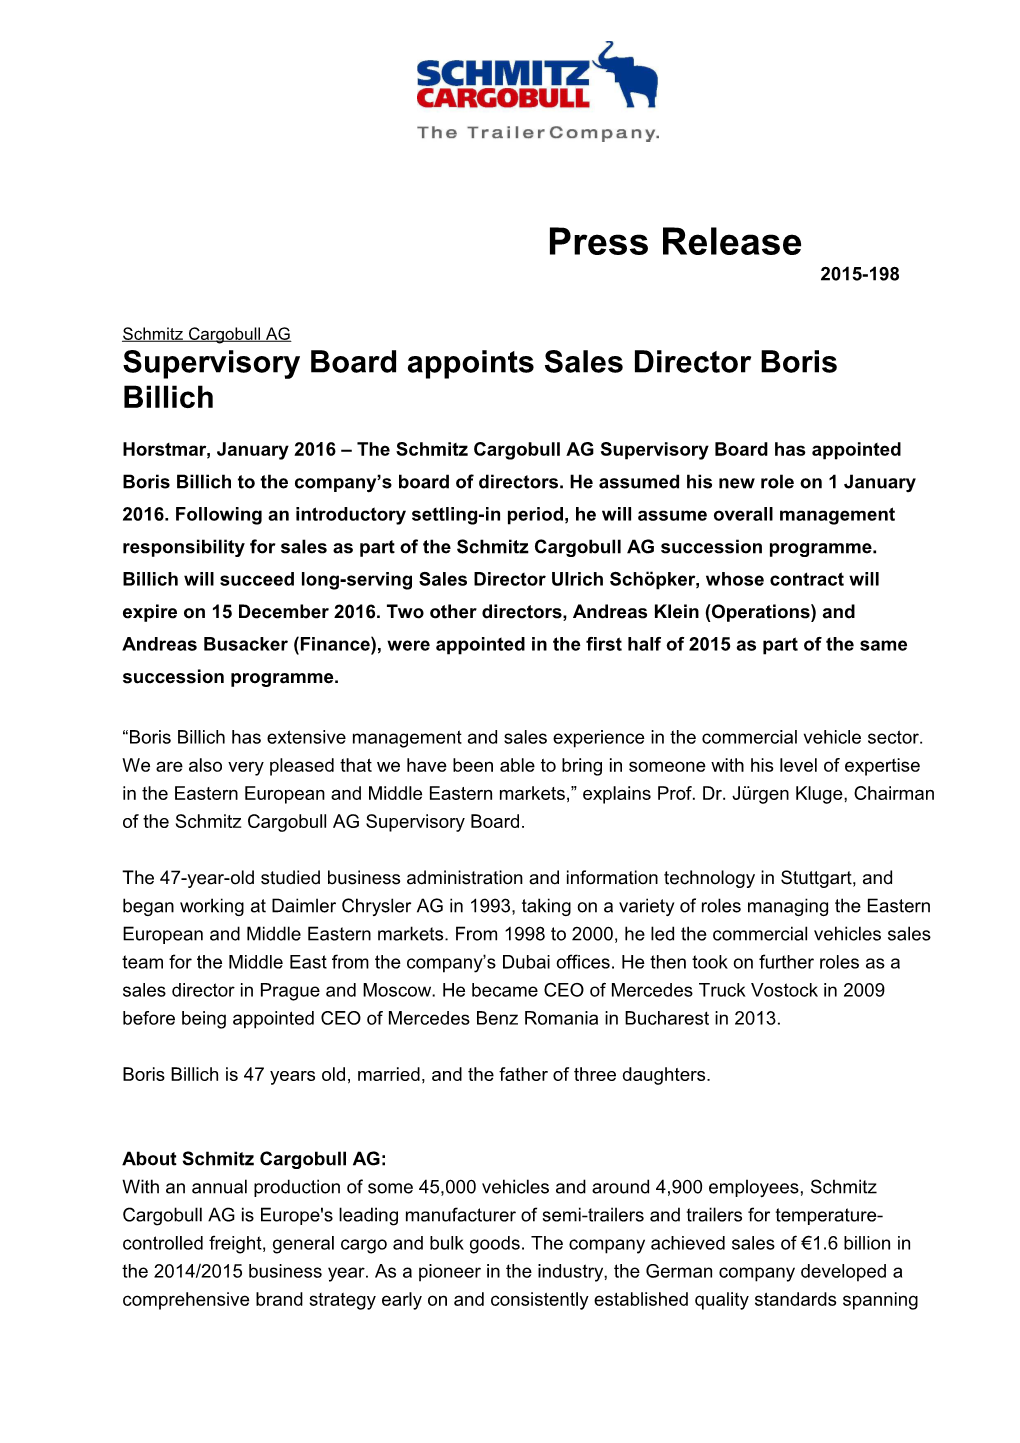 Supervisory Board Appoints Sales Director Boris Billich